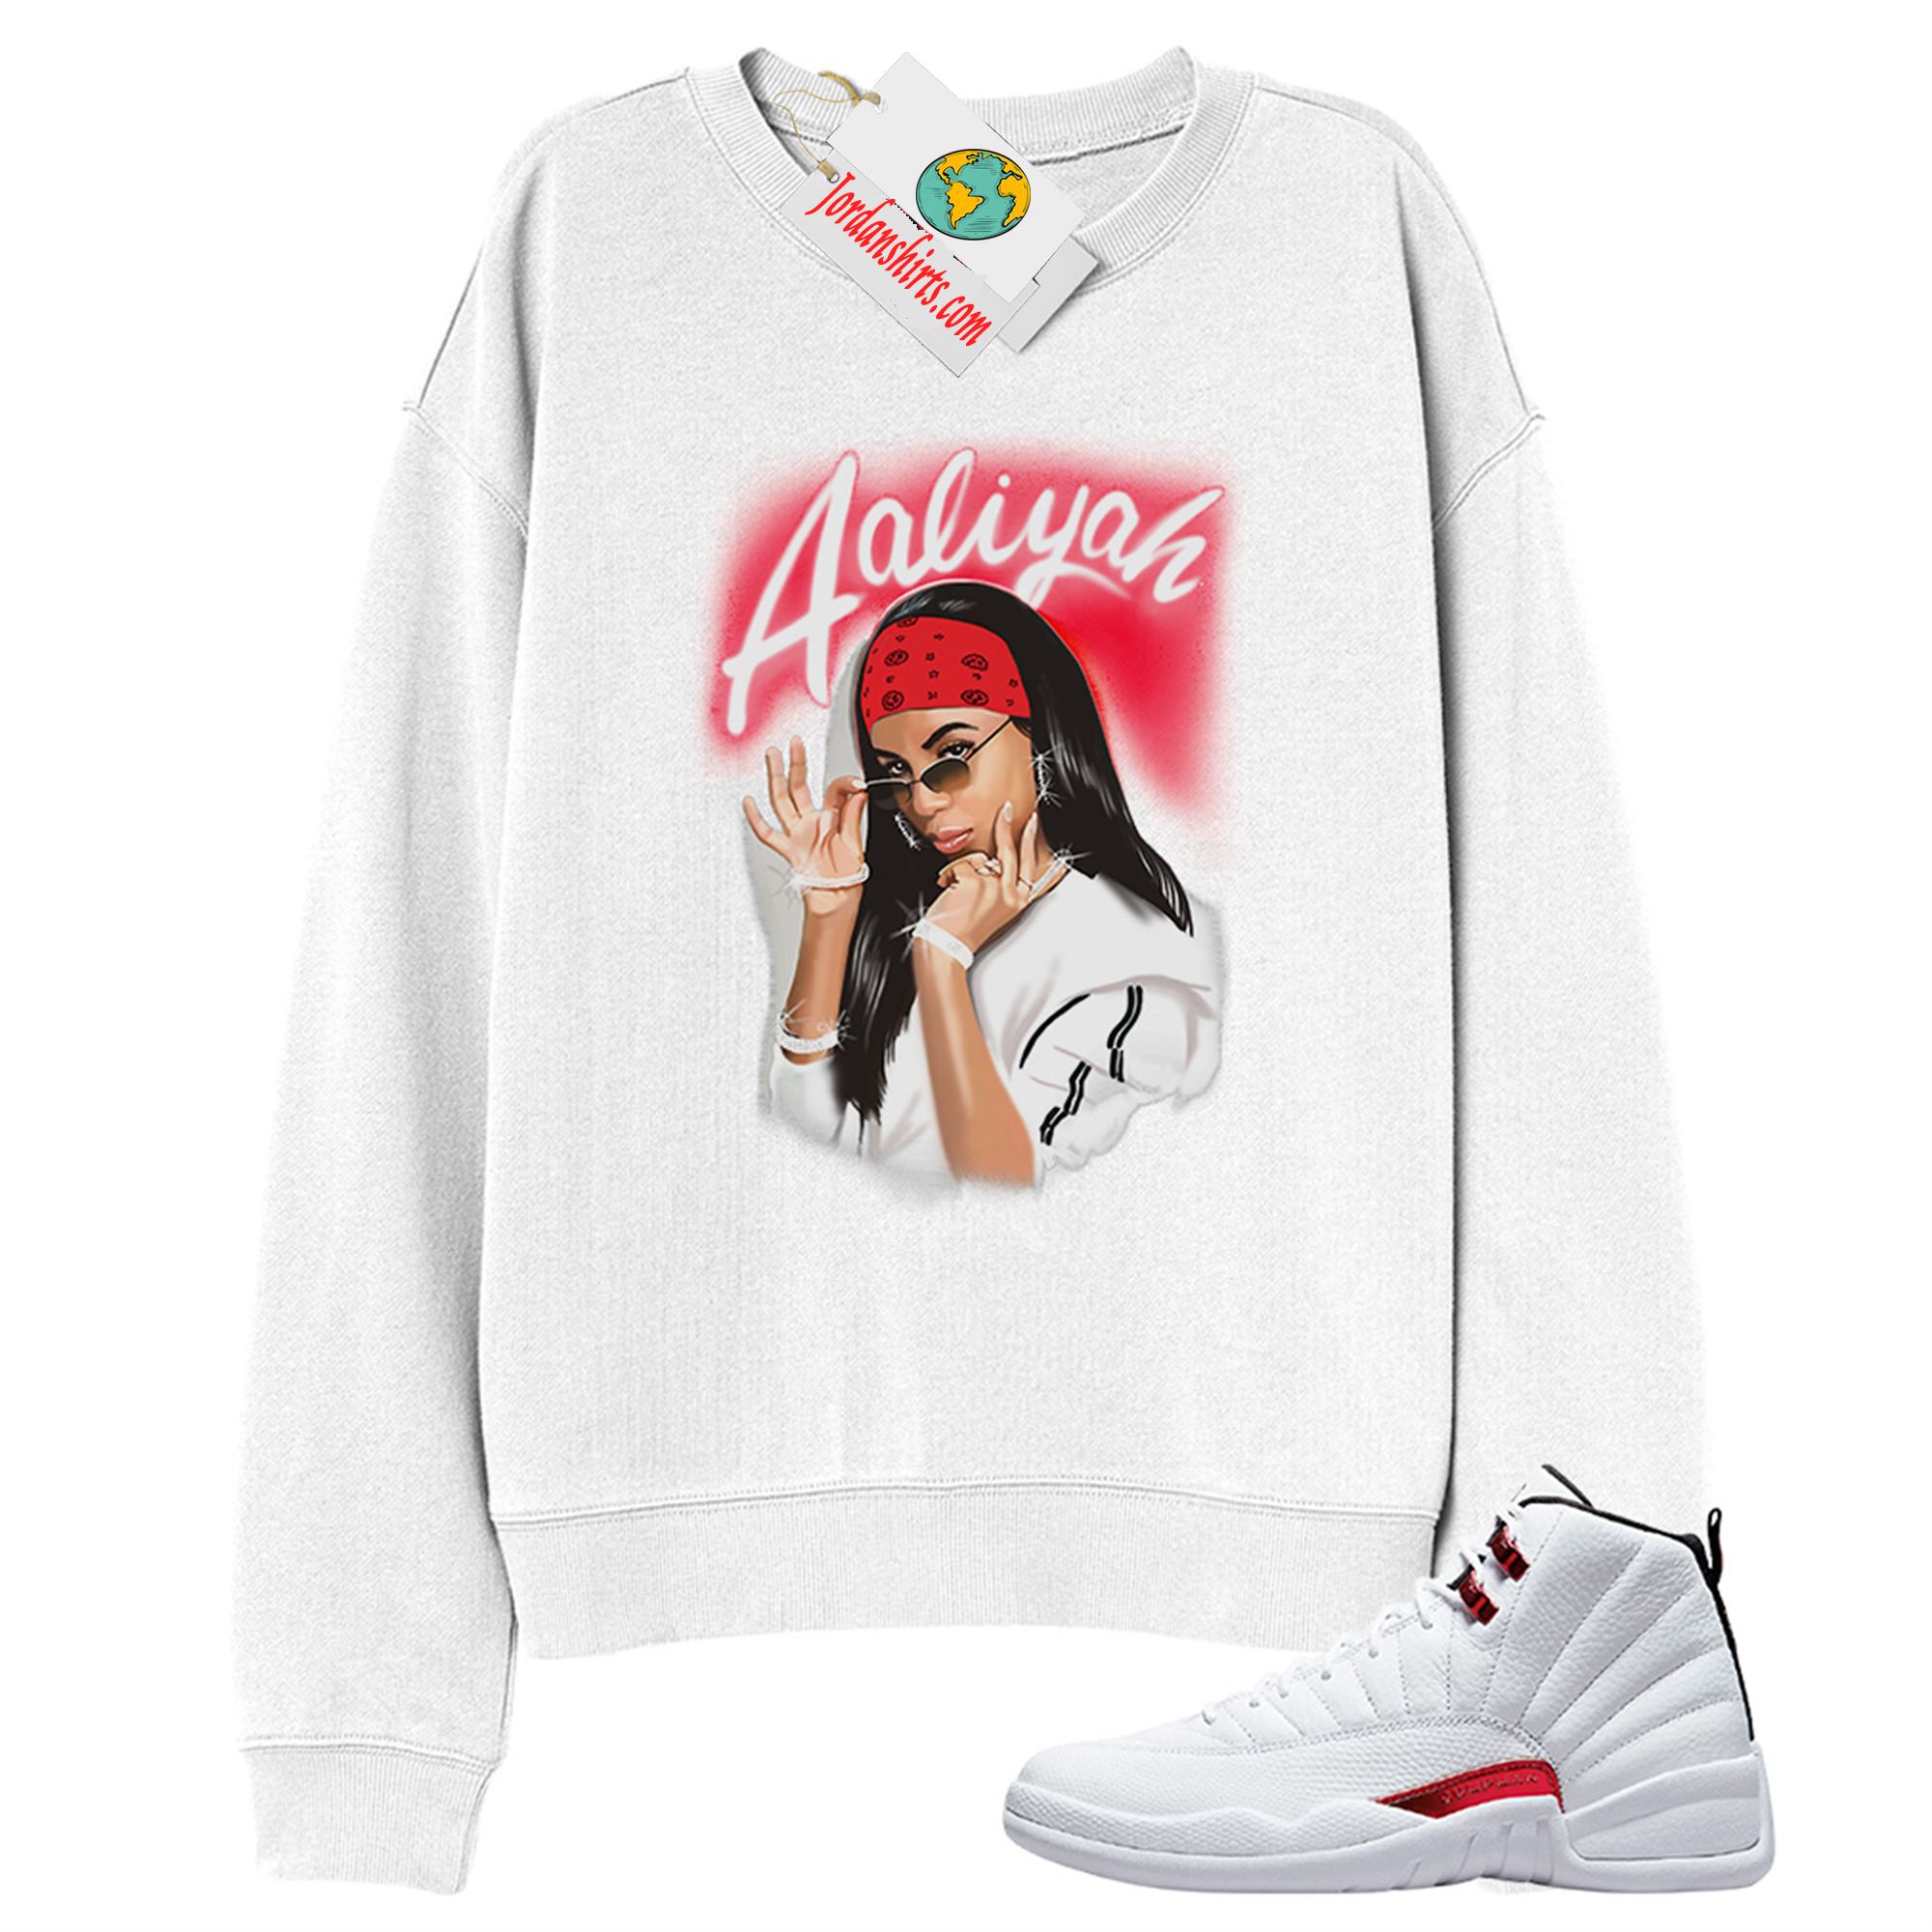 Jordan 12 Sweatshirt, Aaliyah Airbrush White Sweatshirt Air Jordan 12 Twist 12s Full Size Up To 5xl